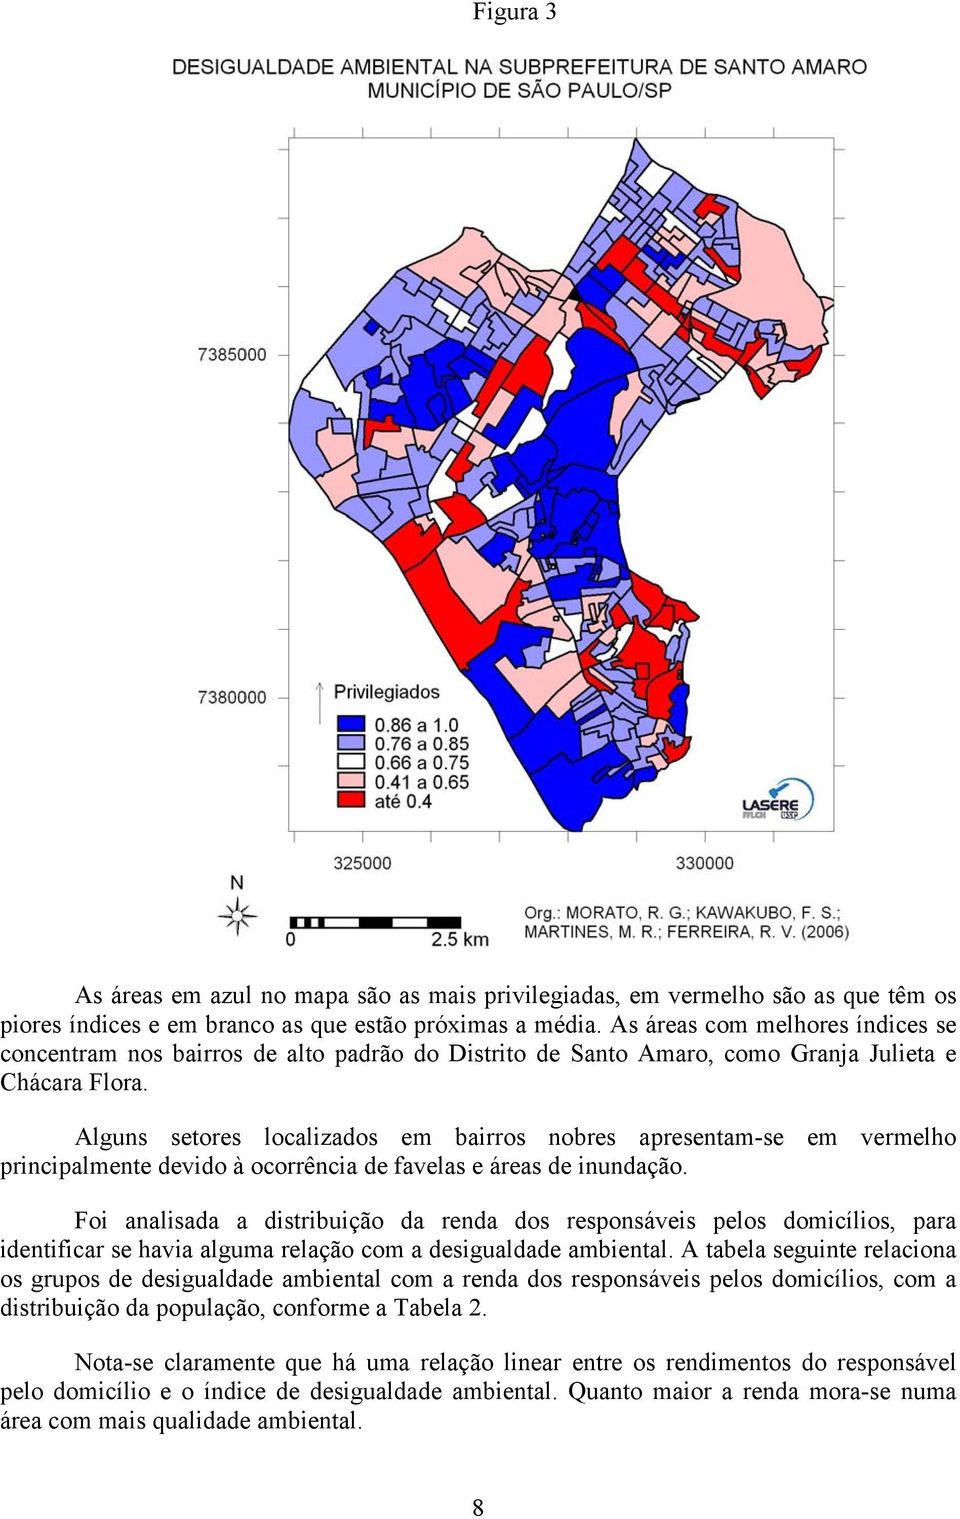 Alguns setores localizados em bairros nobres apresentam-se em vermelho principalmente devido à ocorrência de favelas e áreas de inundação.